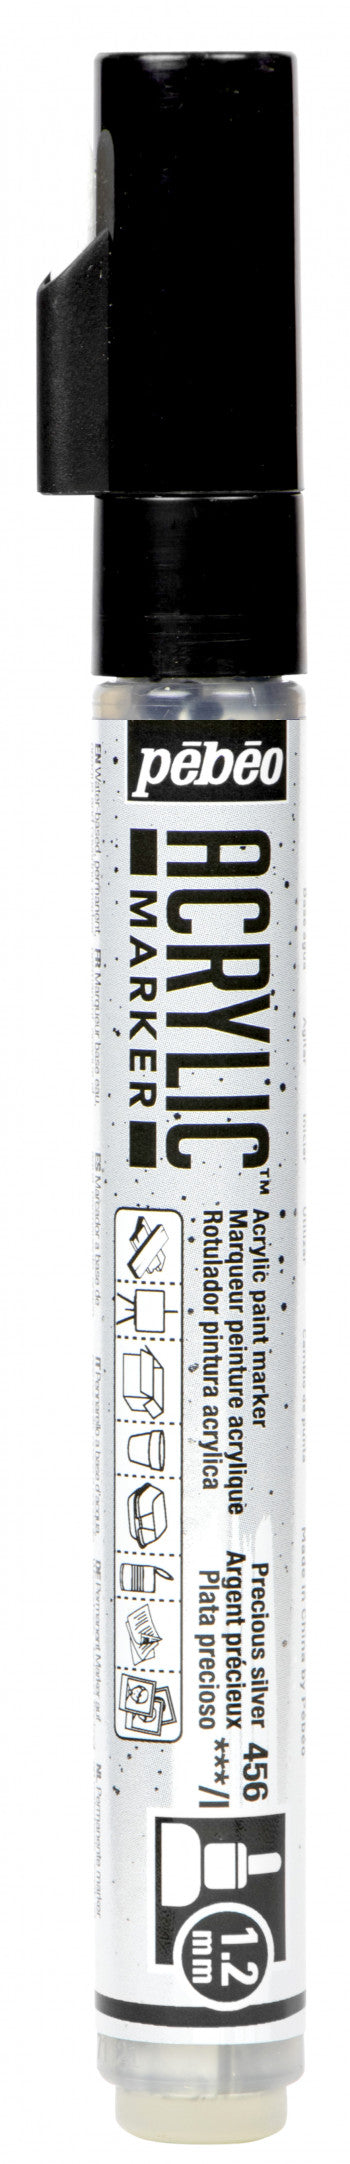 Acrylic Marker 1.2mm Pebeo Precious silver - 456